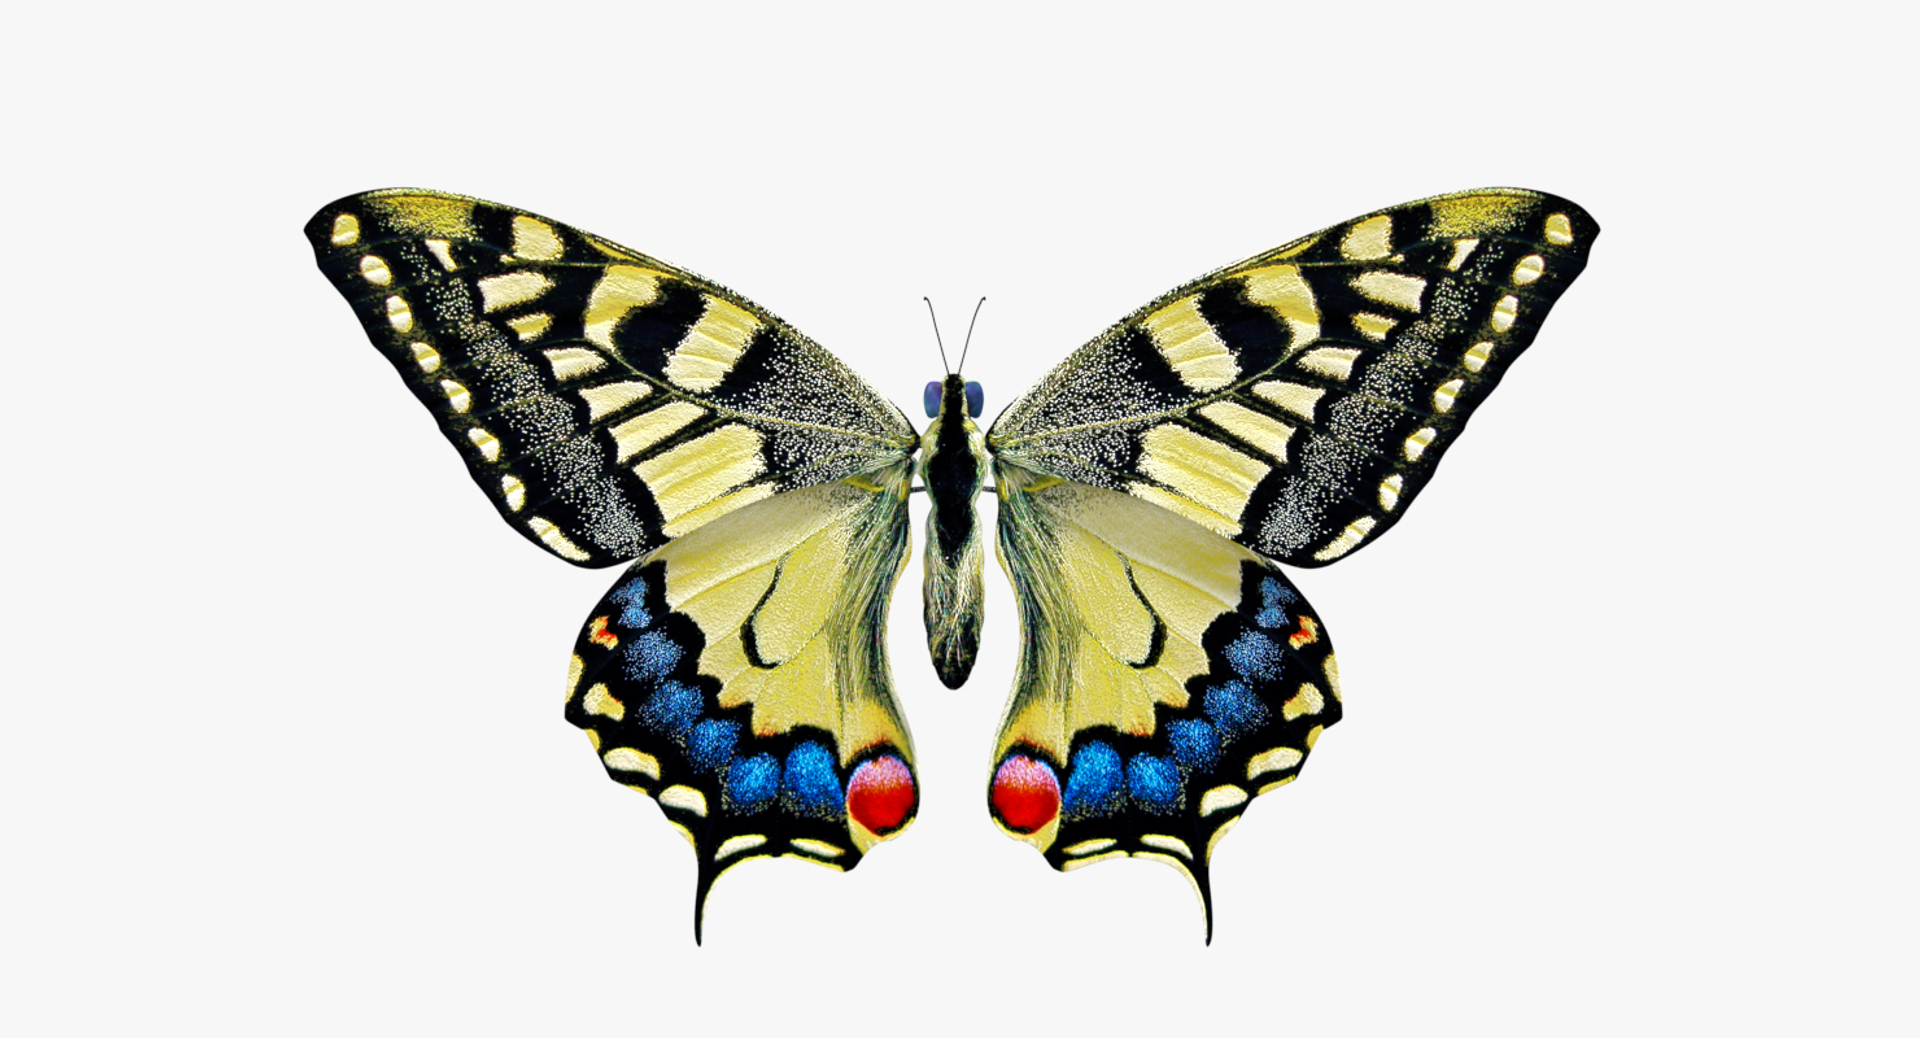 3D model papilio machaon butterfly https://p.turbosquid.com/ts-thumb/i0/puLjj2/mjF6MiD2/butterfly.png/png/1530051797/1920x1080/turn_fit_q99/ca839f1074ac4ec078300faeaa9c81017cbf4498/butterfly.png-1.jpg